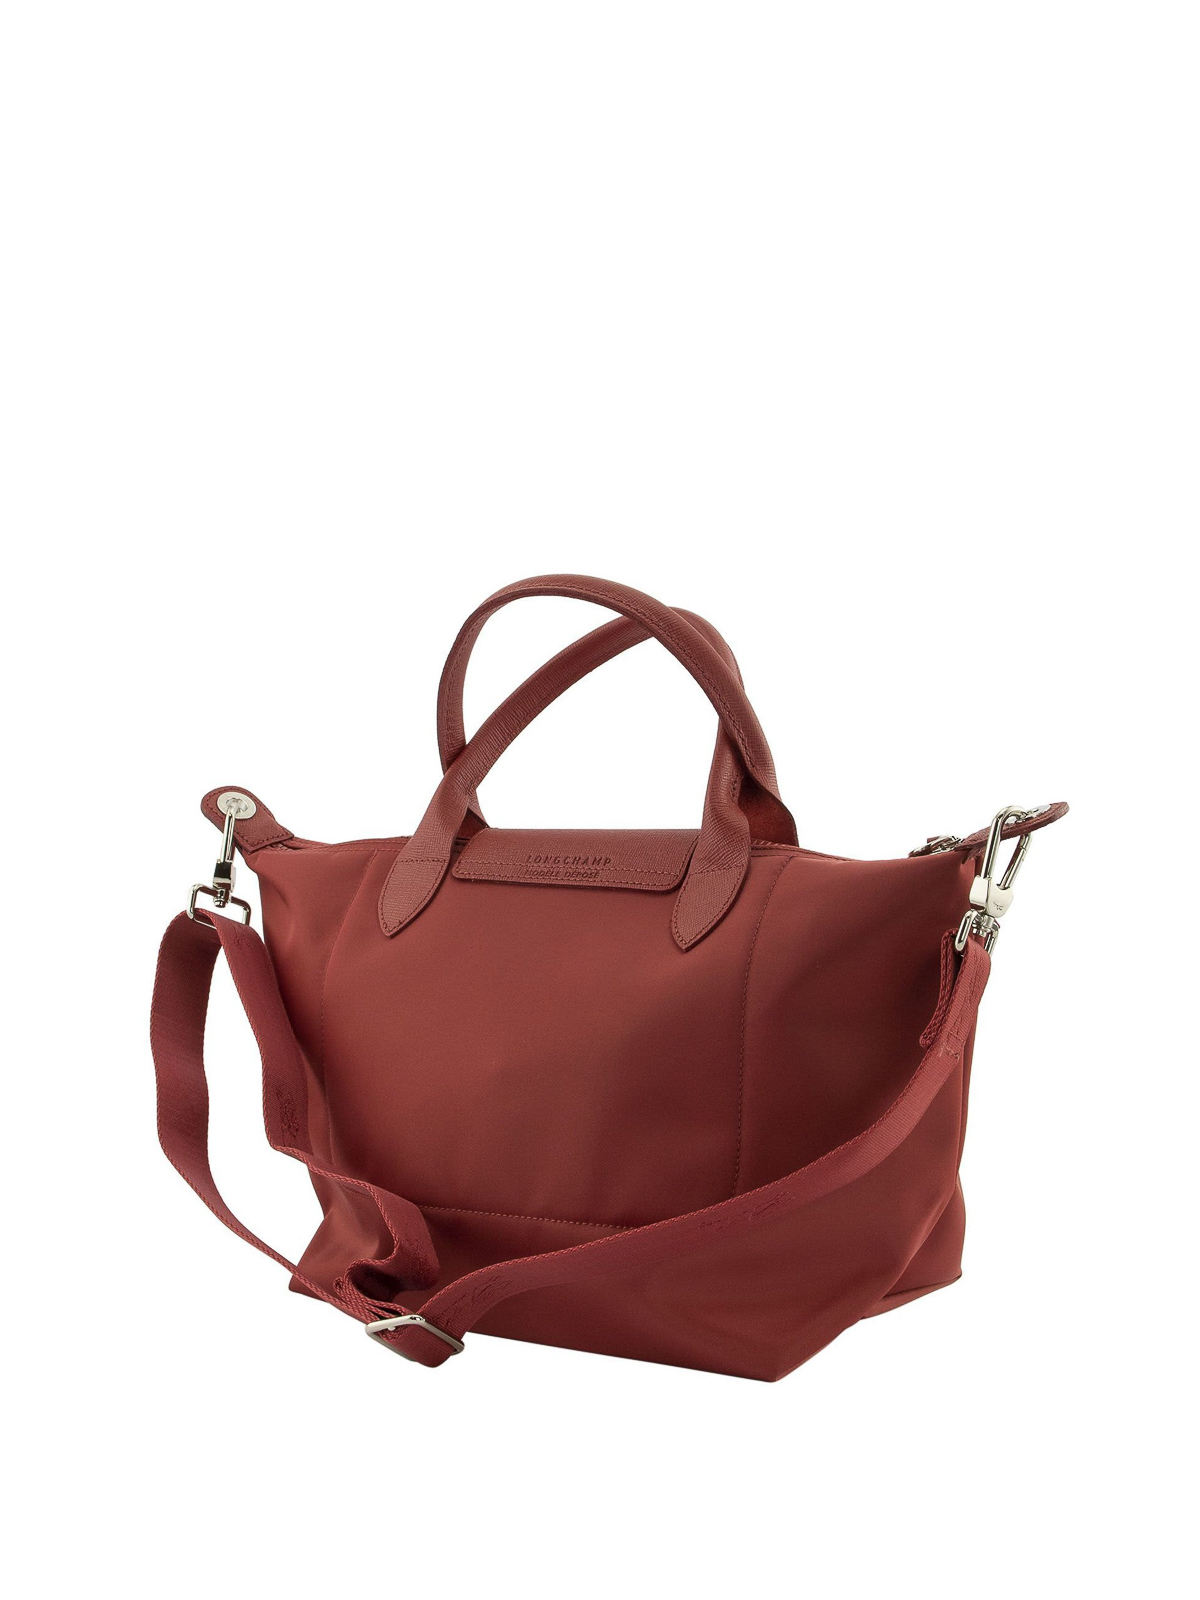 Longchamp, Bags, Authentic Longchamp Le Pliage Neo Bucket Bag